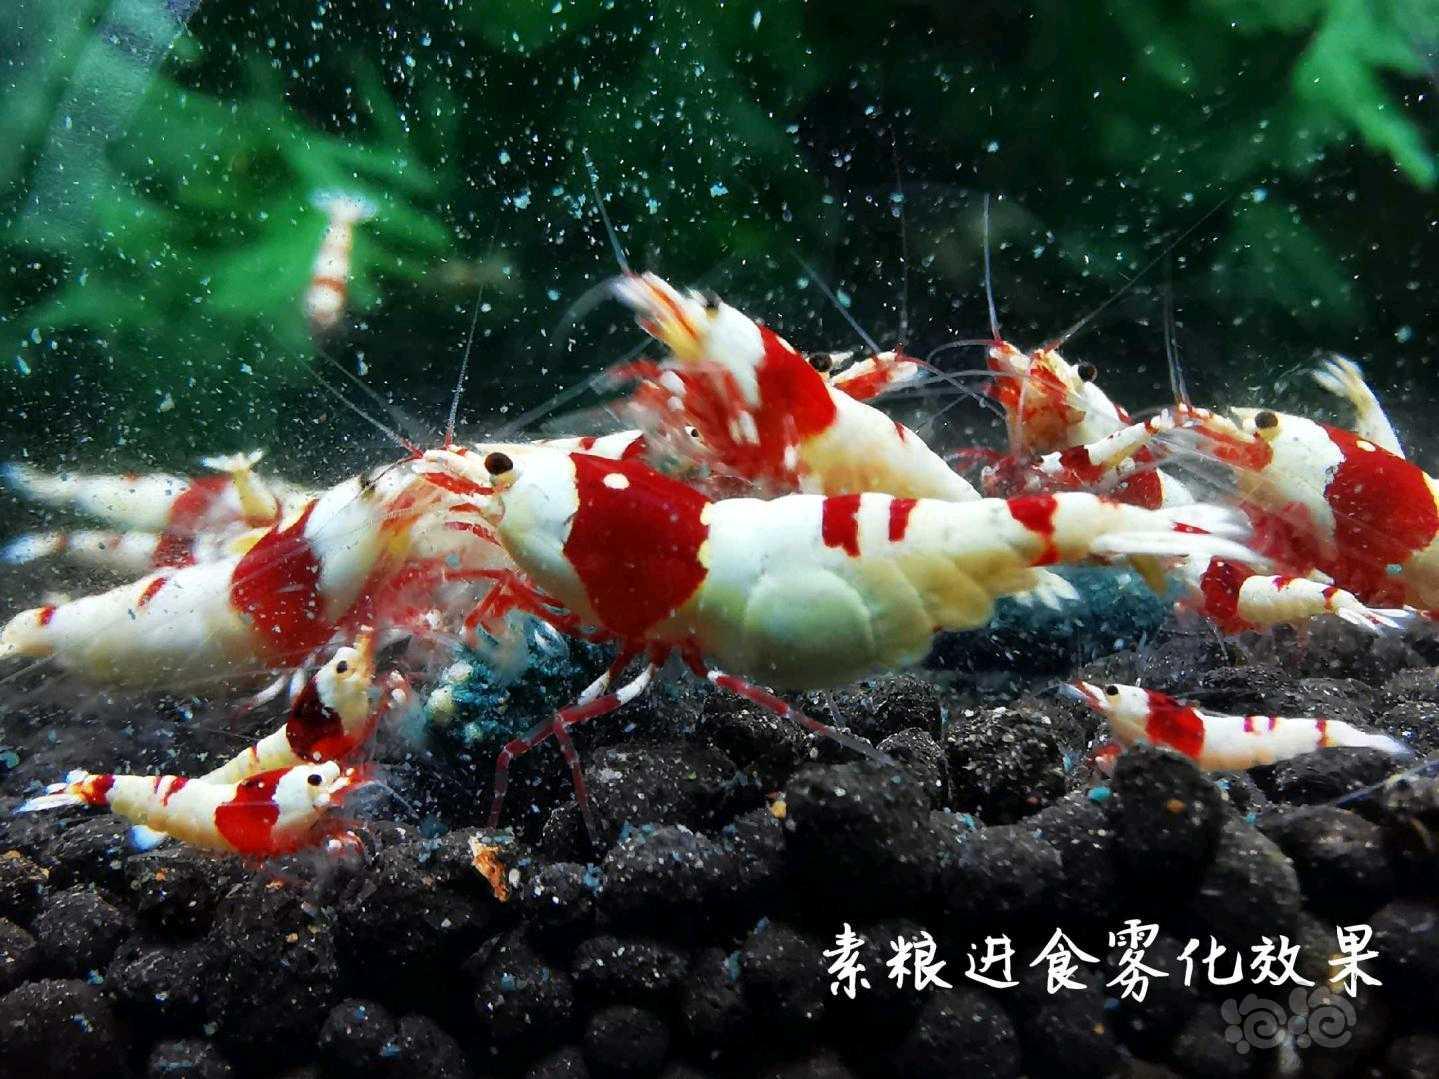 【用品】2021-05-10#RMB拍卖瑾福水晶虾粮一套-图6